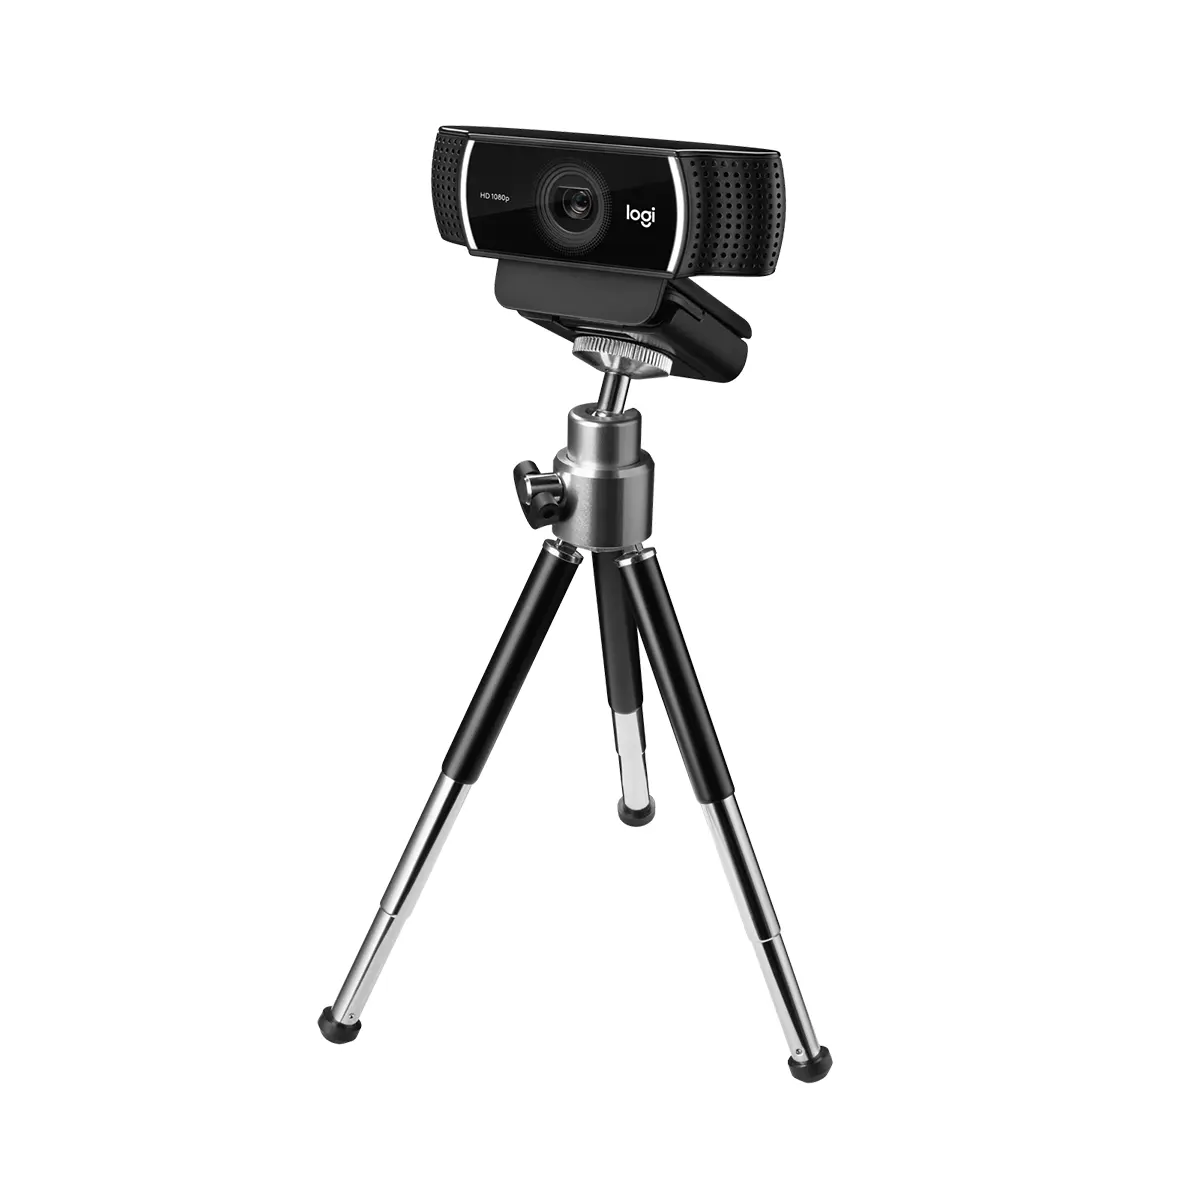 وب کم لاجیتک مدل Logitech C922 Pro Stream 1080p Webcam